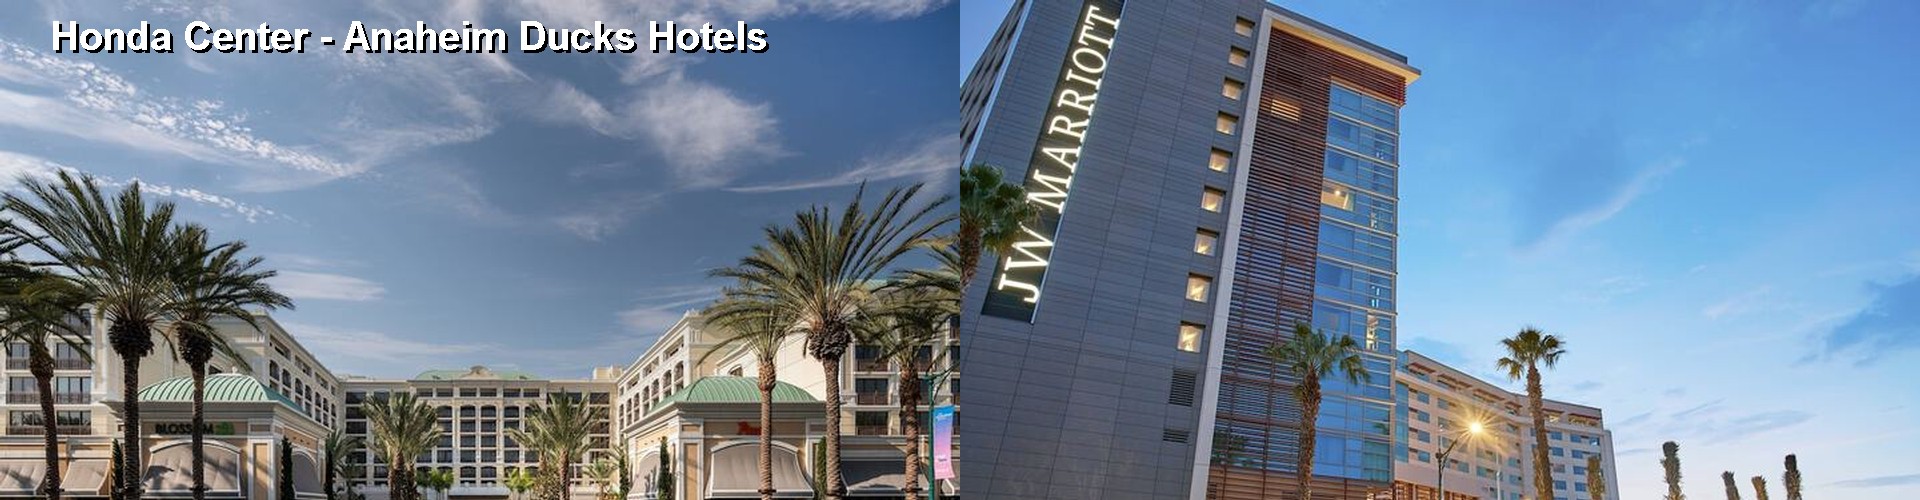 5 Best Hotels near Honda Center - Anaheim Ducks